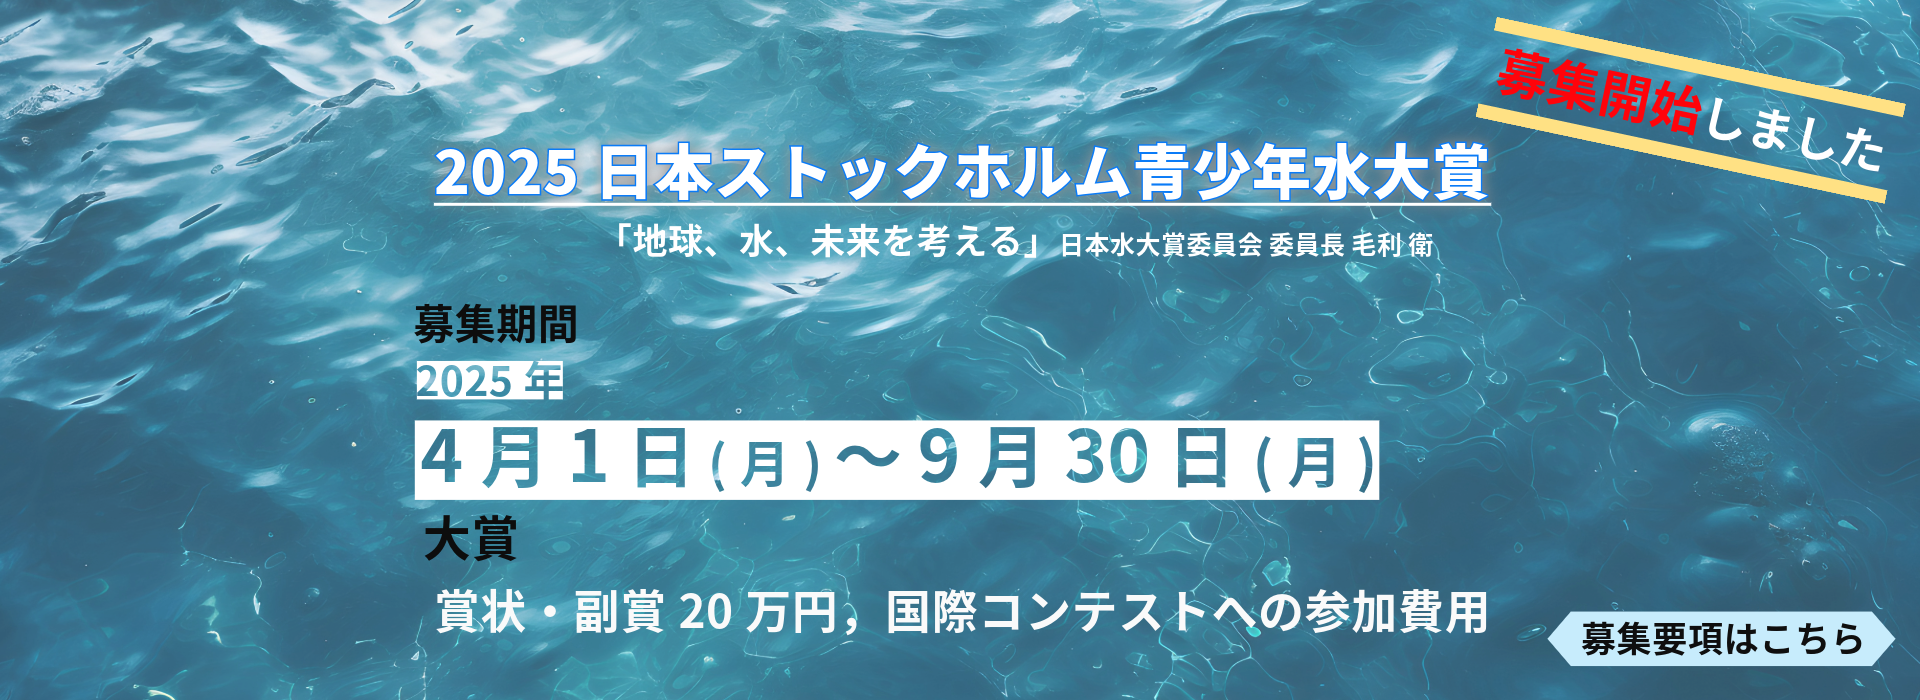 2025年日本ストックホルム青少年水大賞募集開始